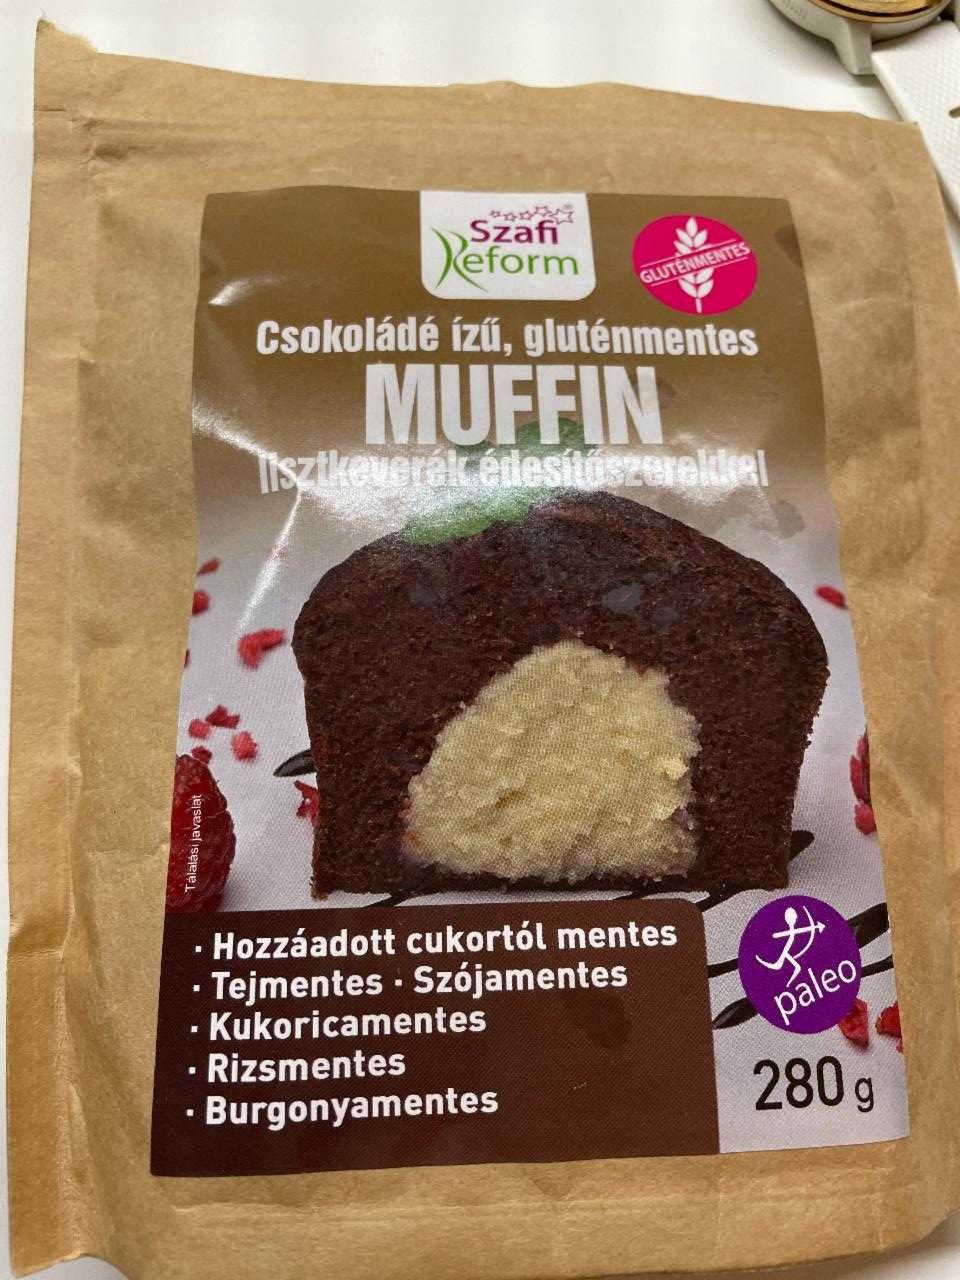 Fotografie - Csokoládé ízű, gluténmentes muffin lisztkeverék Szafi reform